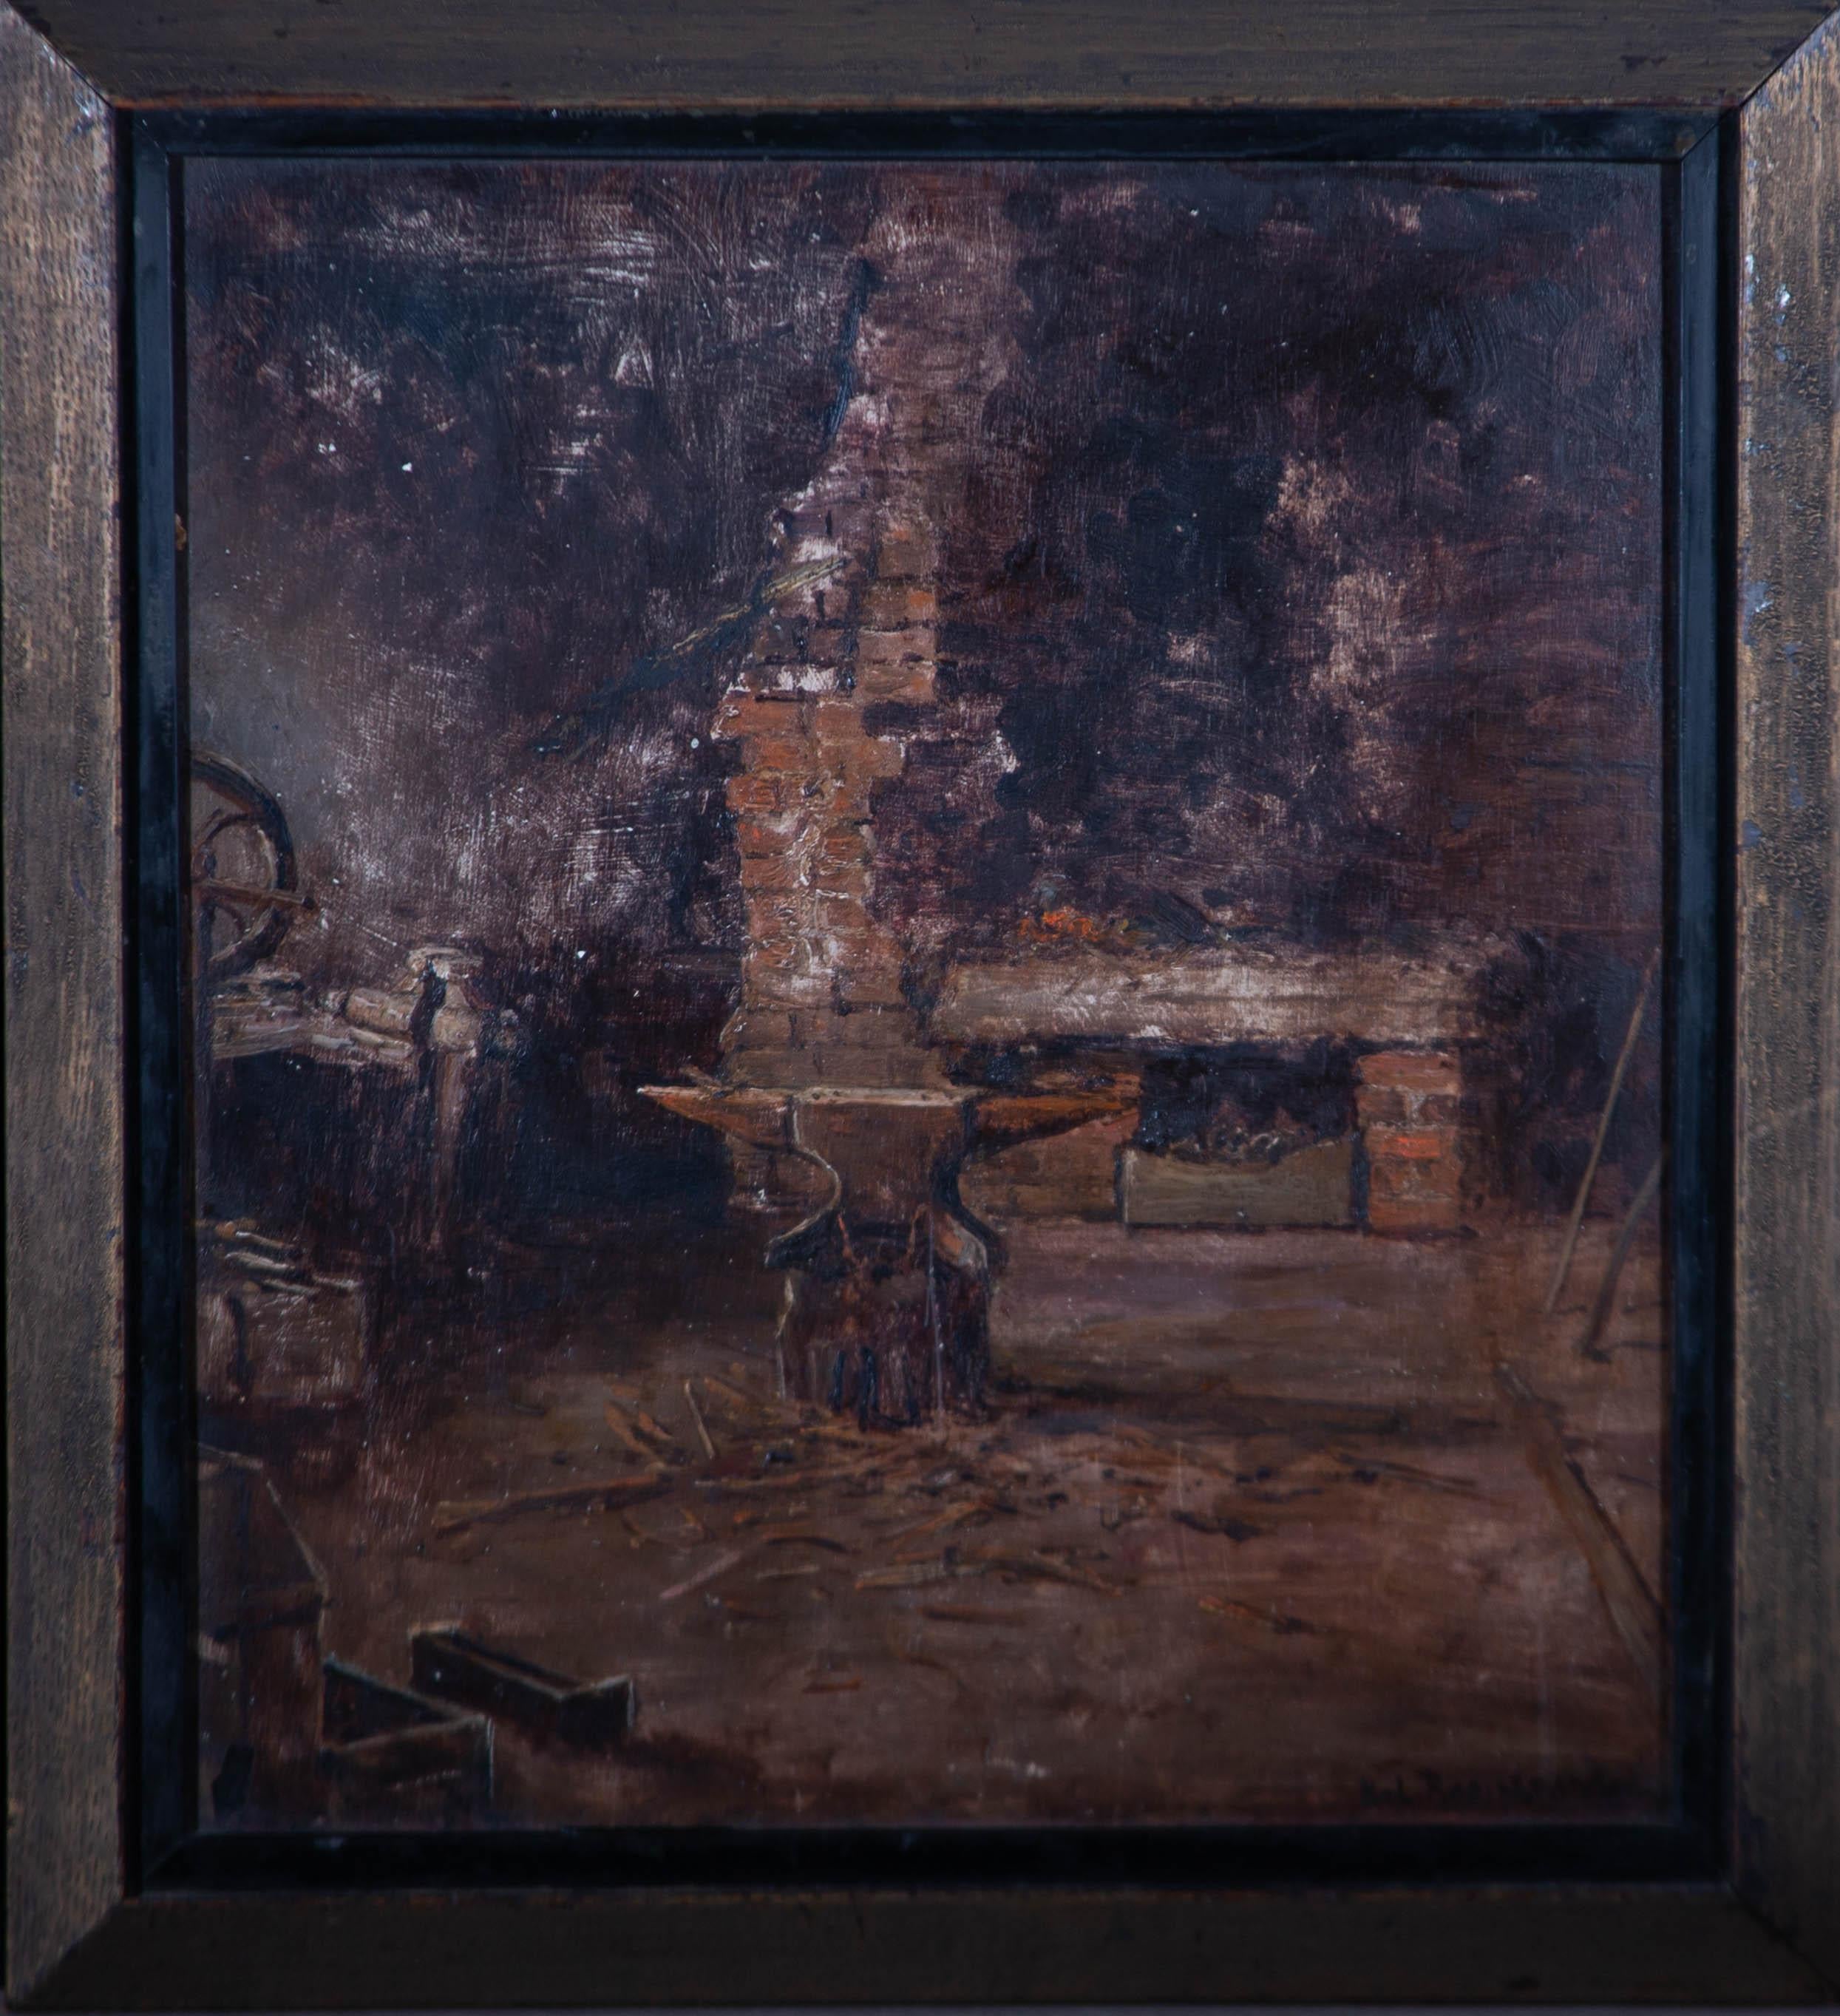 Une scène d'intérieur à l'huile inhabituellement stylisée montrant une forge rustique à Weeton, dans le Yorkshire. L'artiste a obtenu l'éclairage naturaliste d'une pièce éclairée par la lumière du jour provenant d'une fenêtre invisible et la lueur